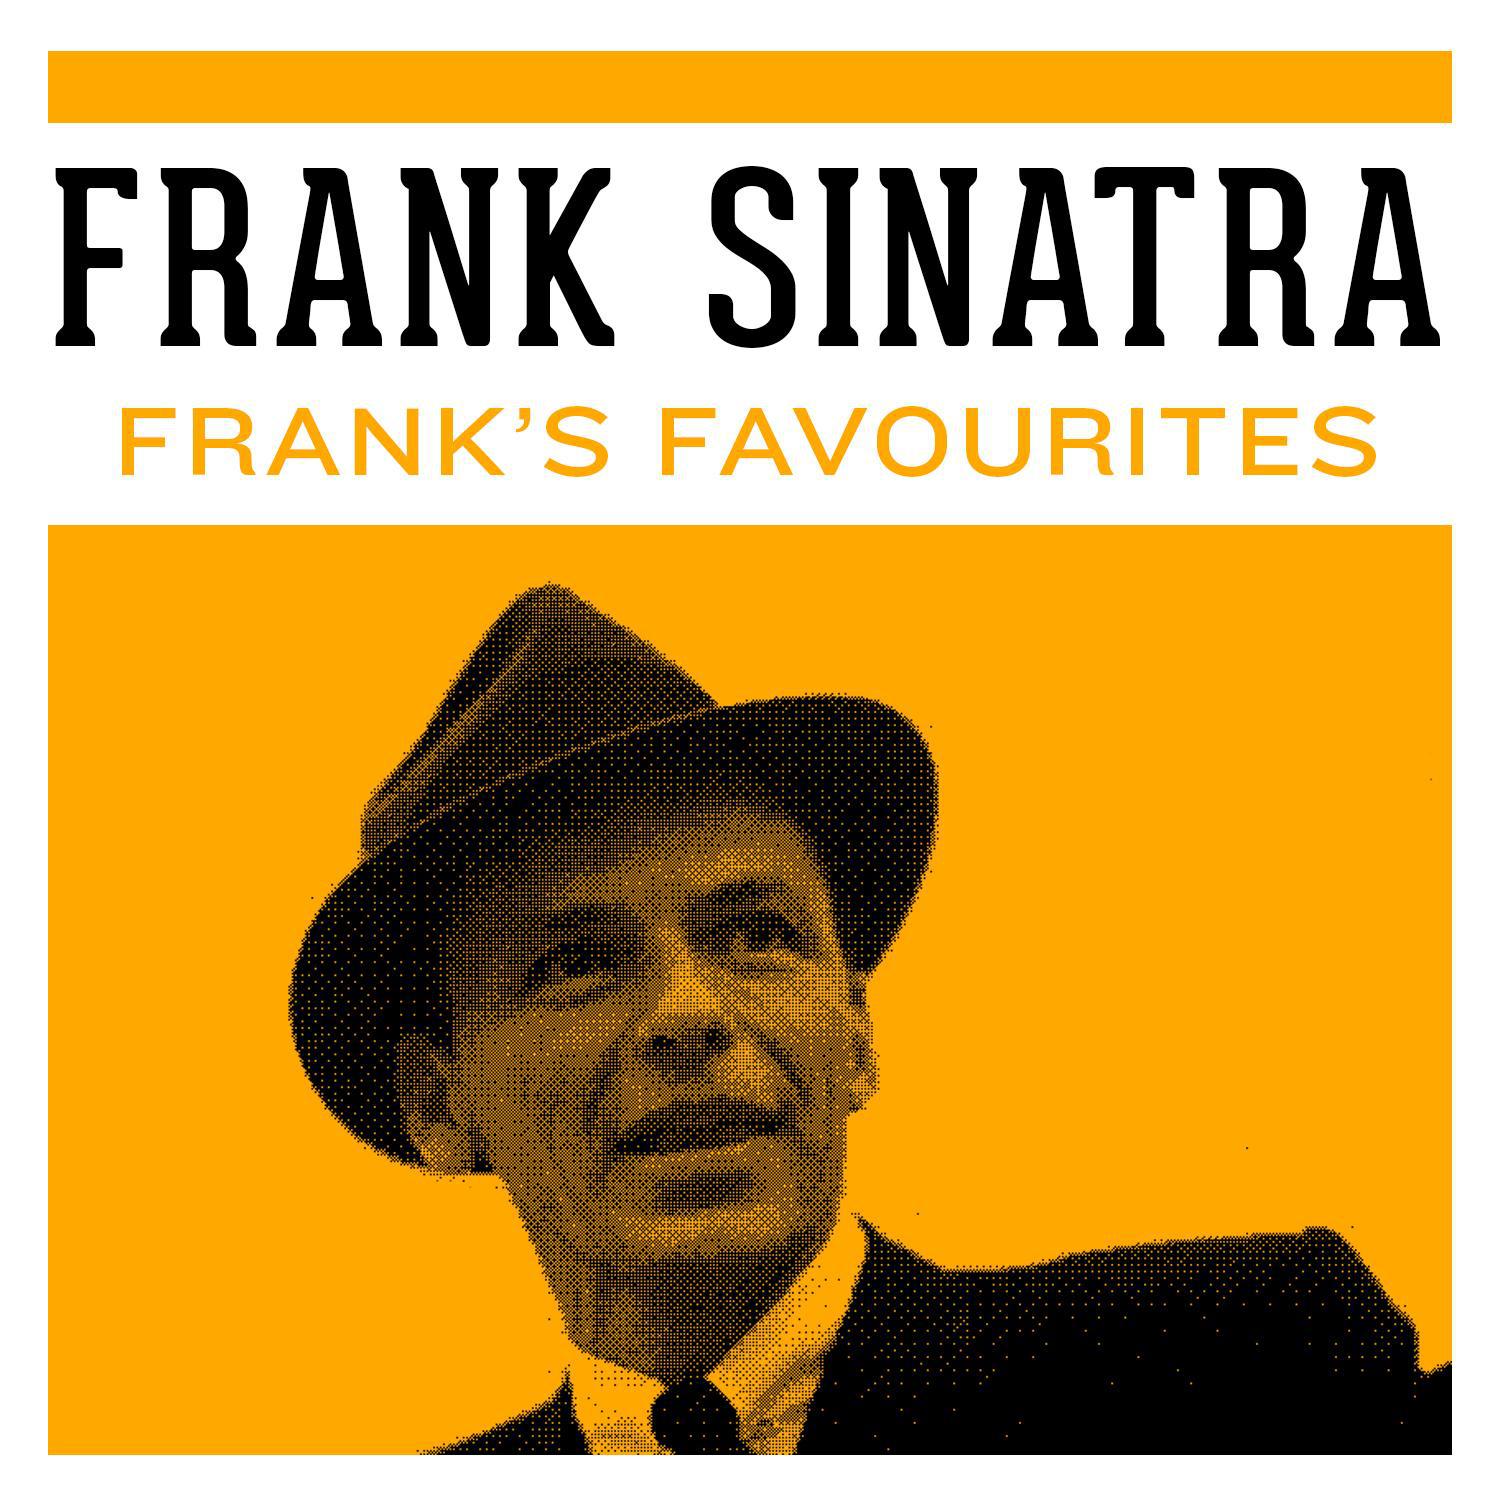 Frank Sinatra. Frank Sinatra New York. Fly me to the Moon Frank Sinatra. Frank Sinatra send in the Clowns.